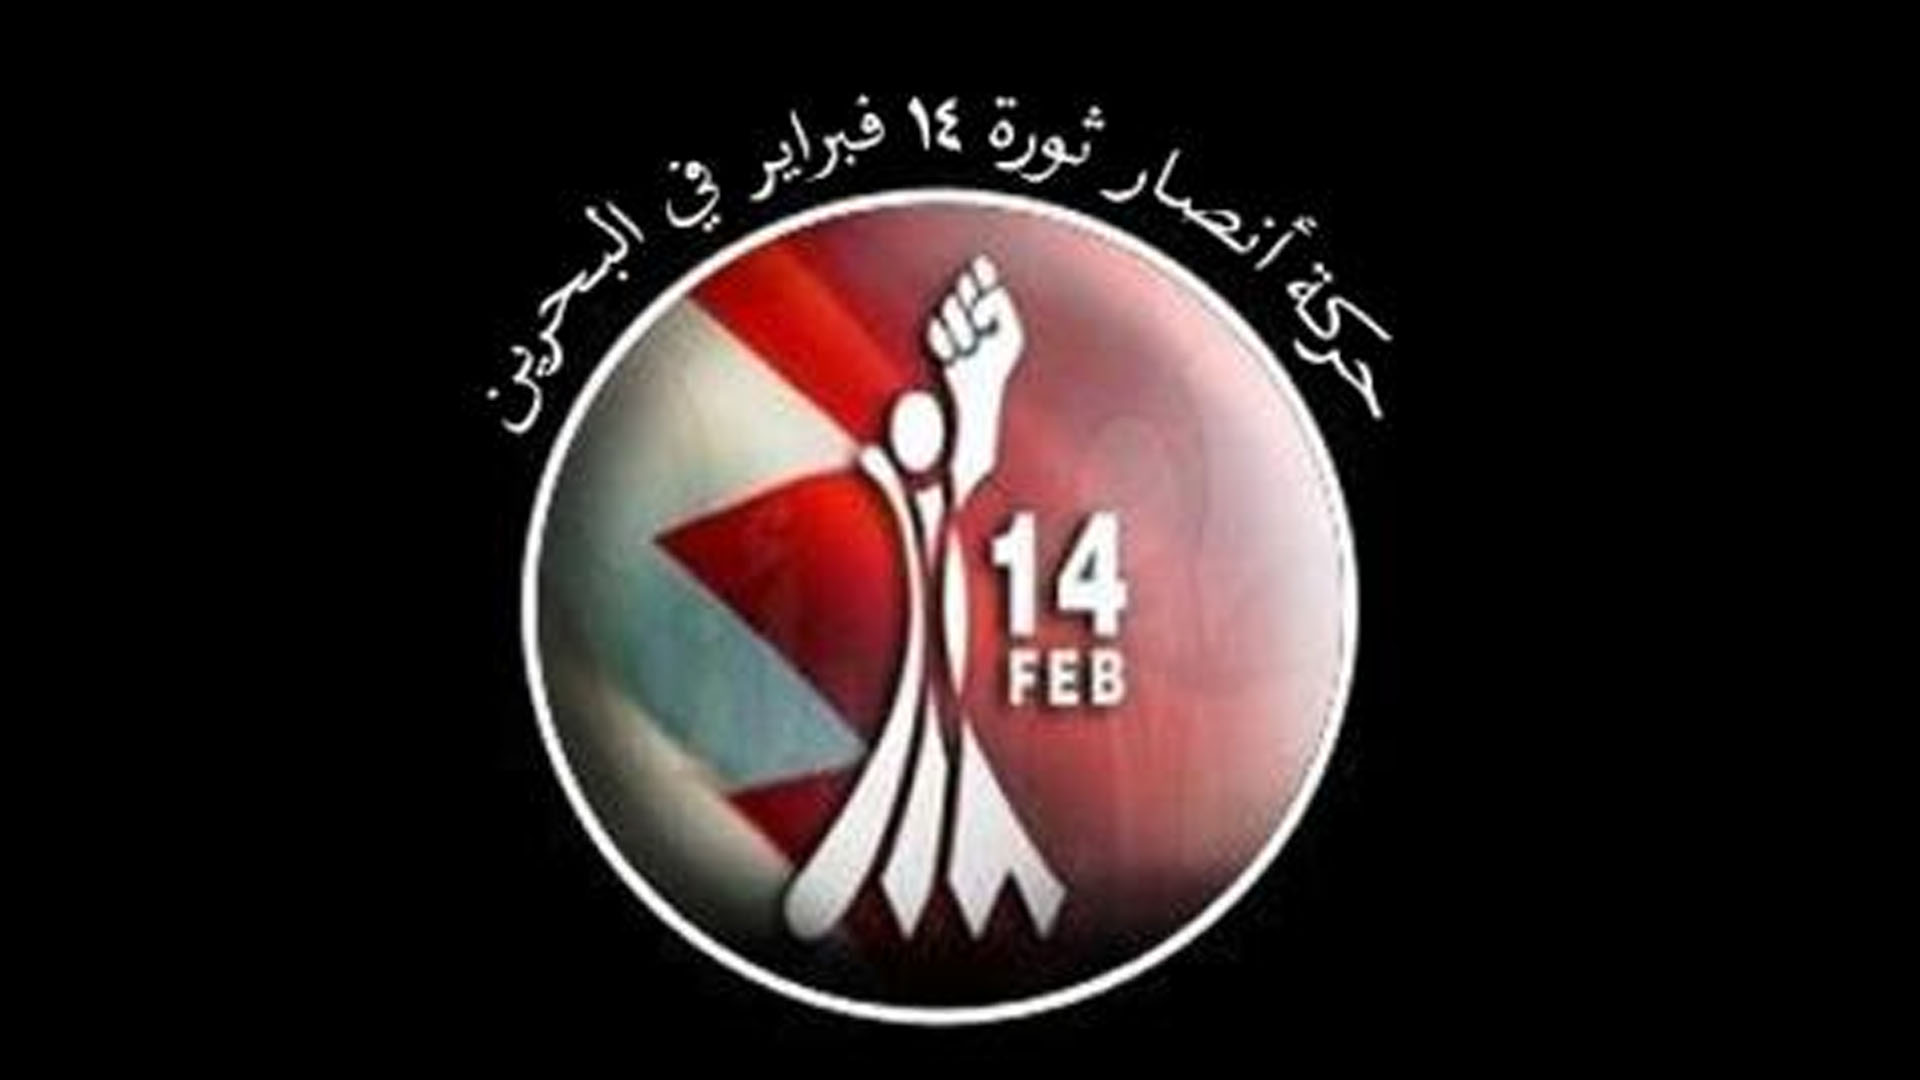 بيان هام من حركة أنصار شباب ثورة 14 فبراير  حول المؤتمر الخليفي في البحرين